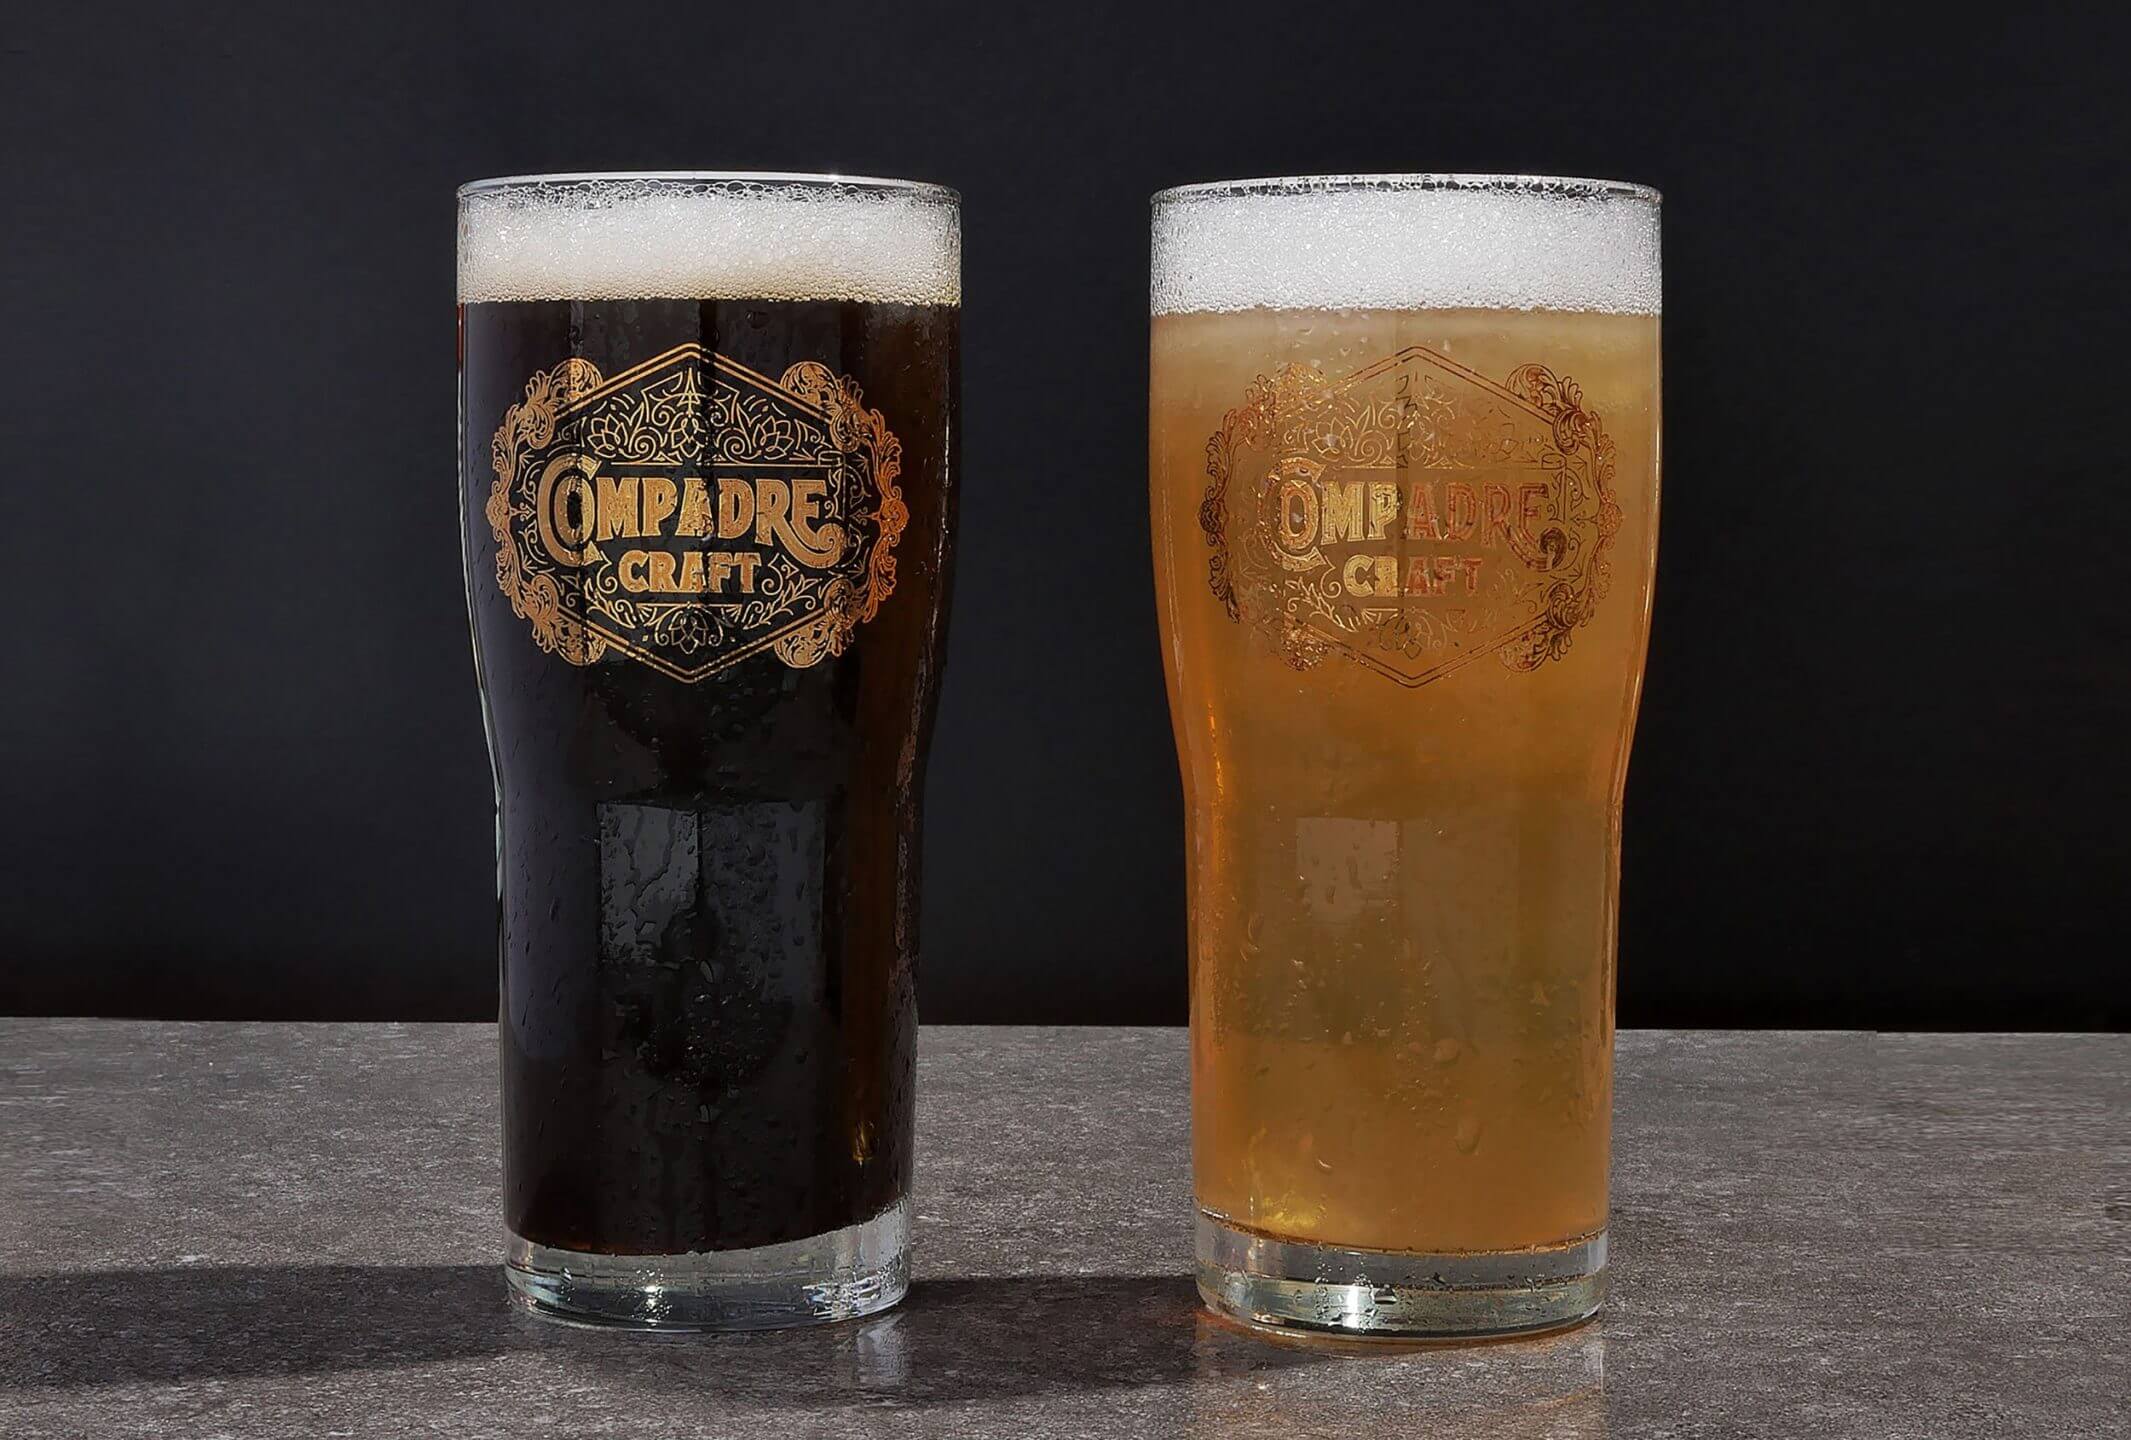 Custom vintage bottle designs for food and beverage brand Compadre Craft Beer